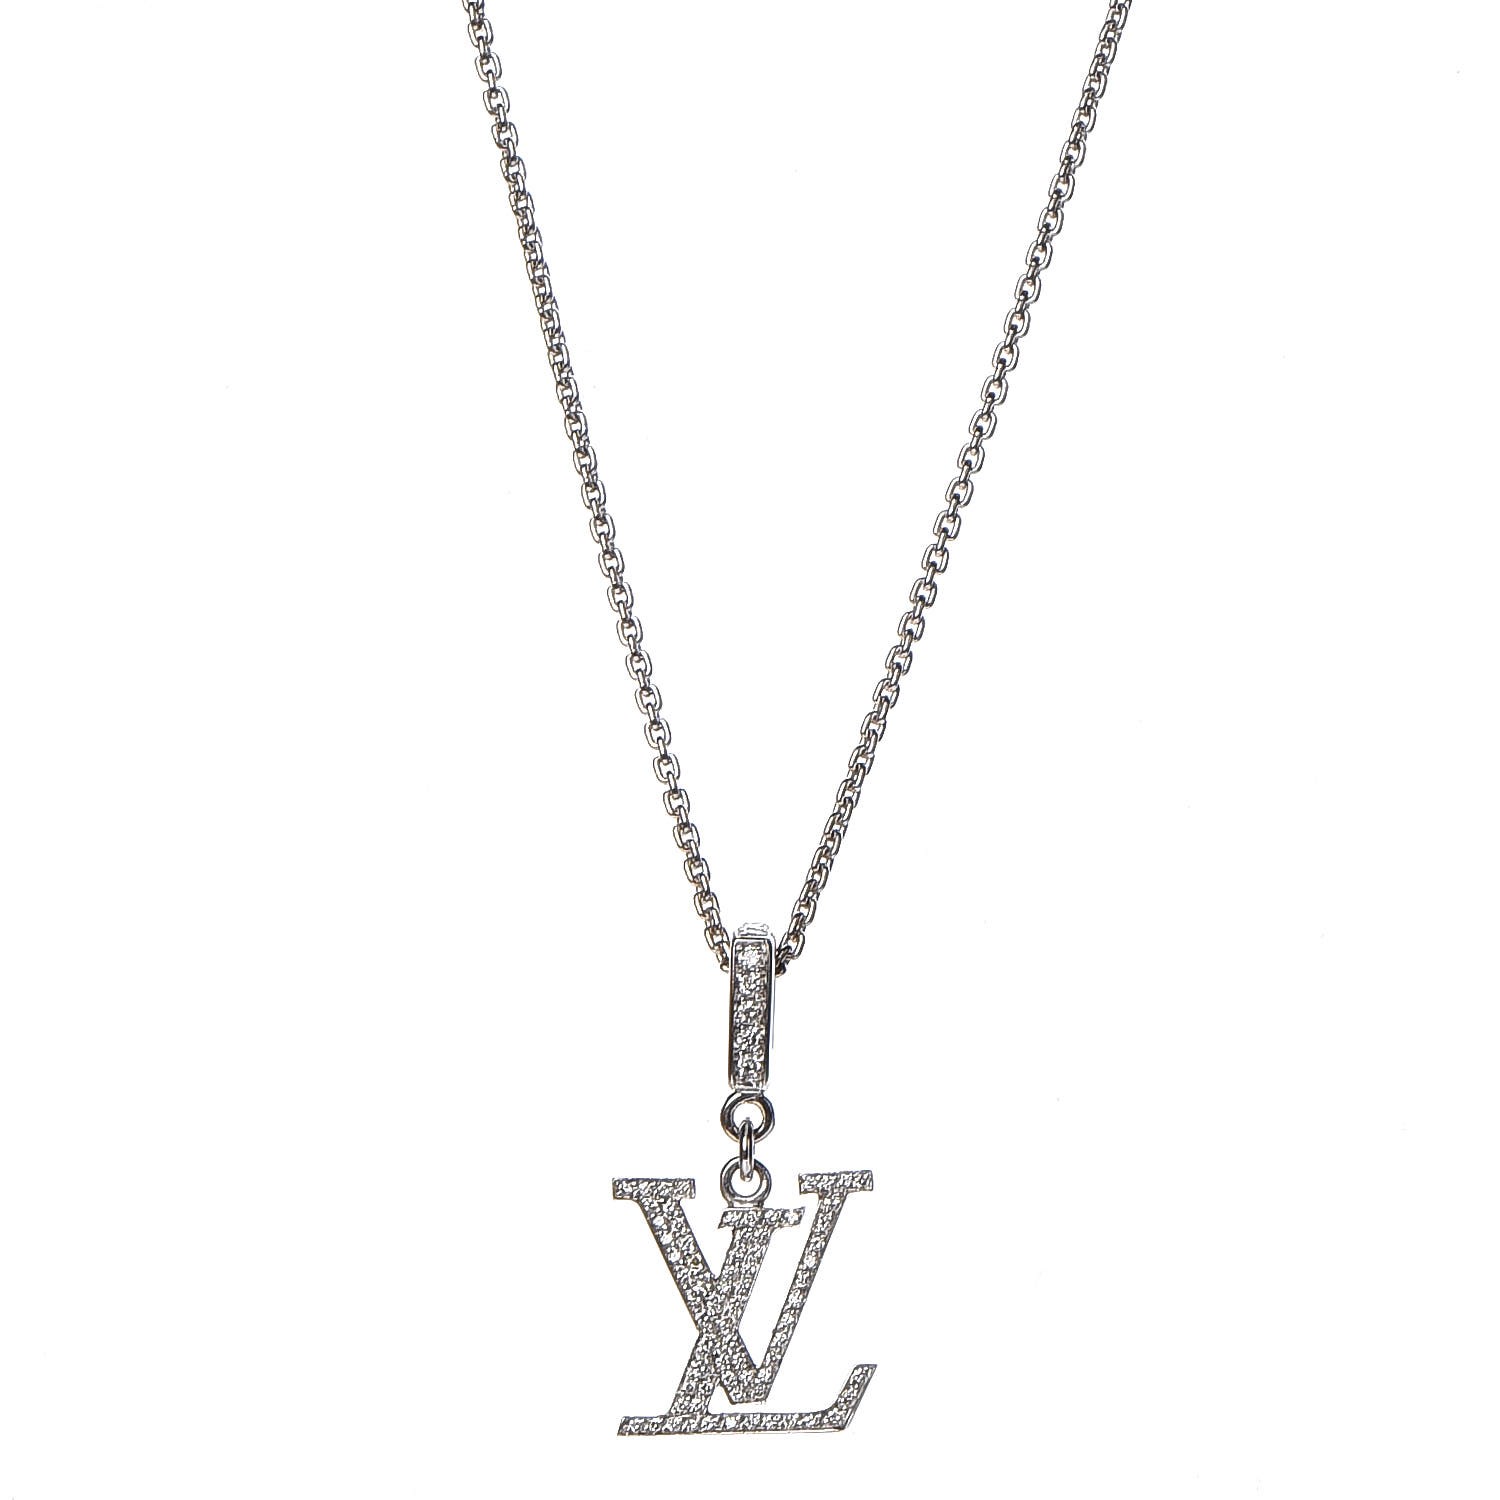 Shop Louis Vuitton MONOGRAM Monogram Necklaces & Chokers by LEONGO